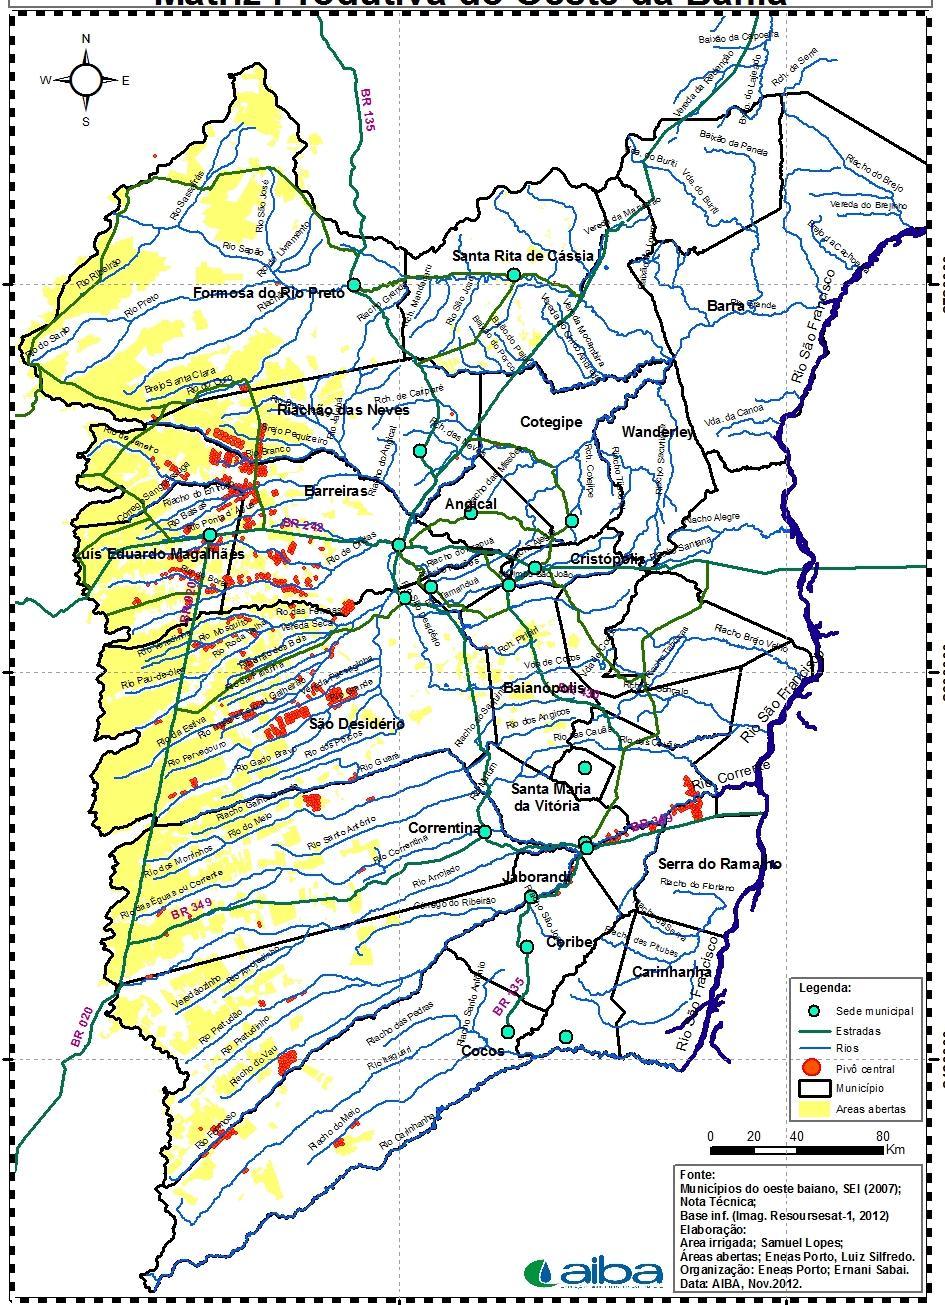 2.4 MATRIZ PRODUTIVA IRRIGADA PIVÔ CENTRAL Composição de Área Irrigada através de Pivô Central por Município do Oeste da Bahia - Ago/2014 - Estimativa N Municípios N Pivôs Área - ha¹ % Área 1